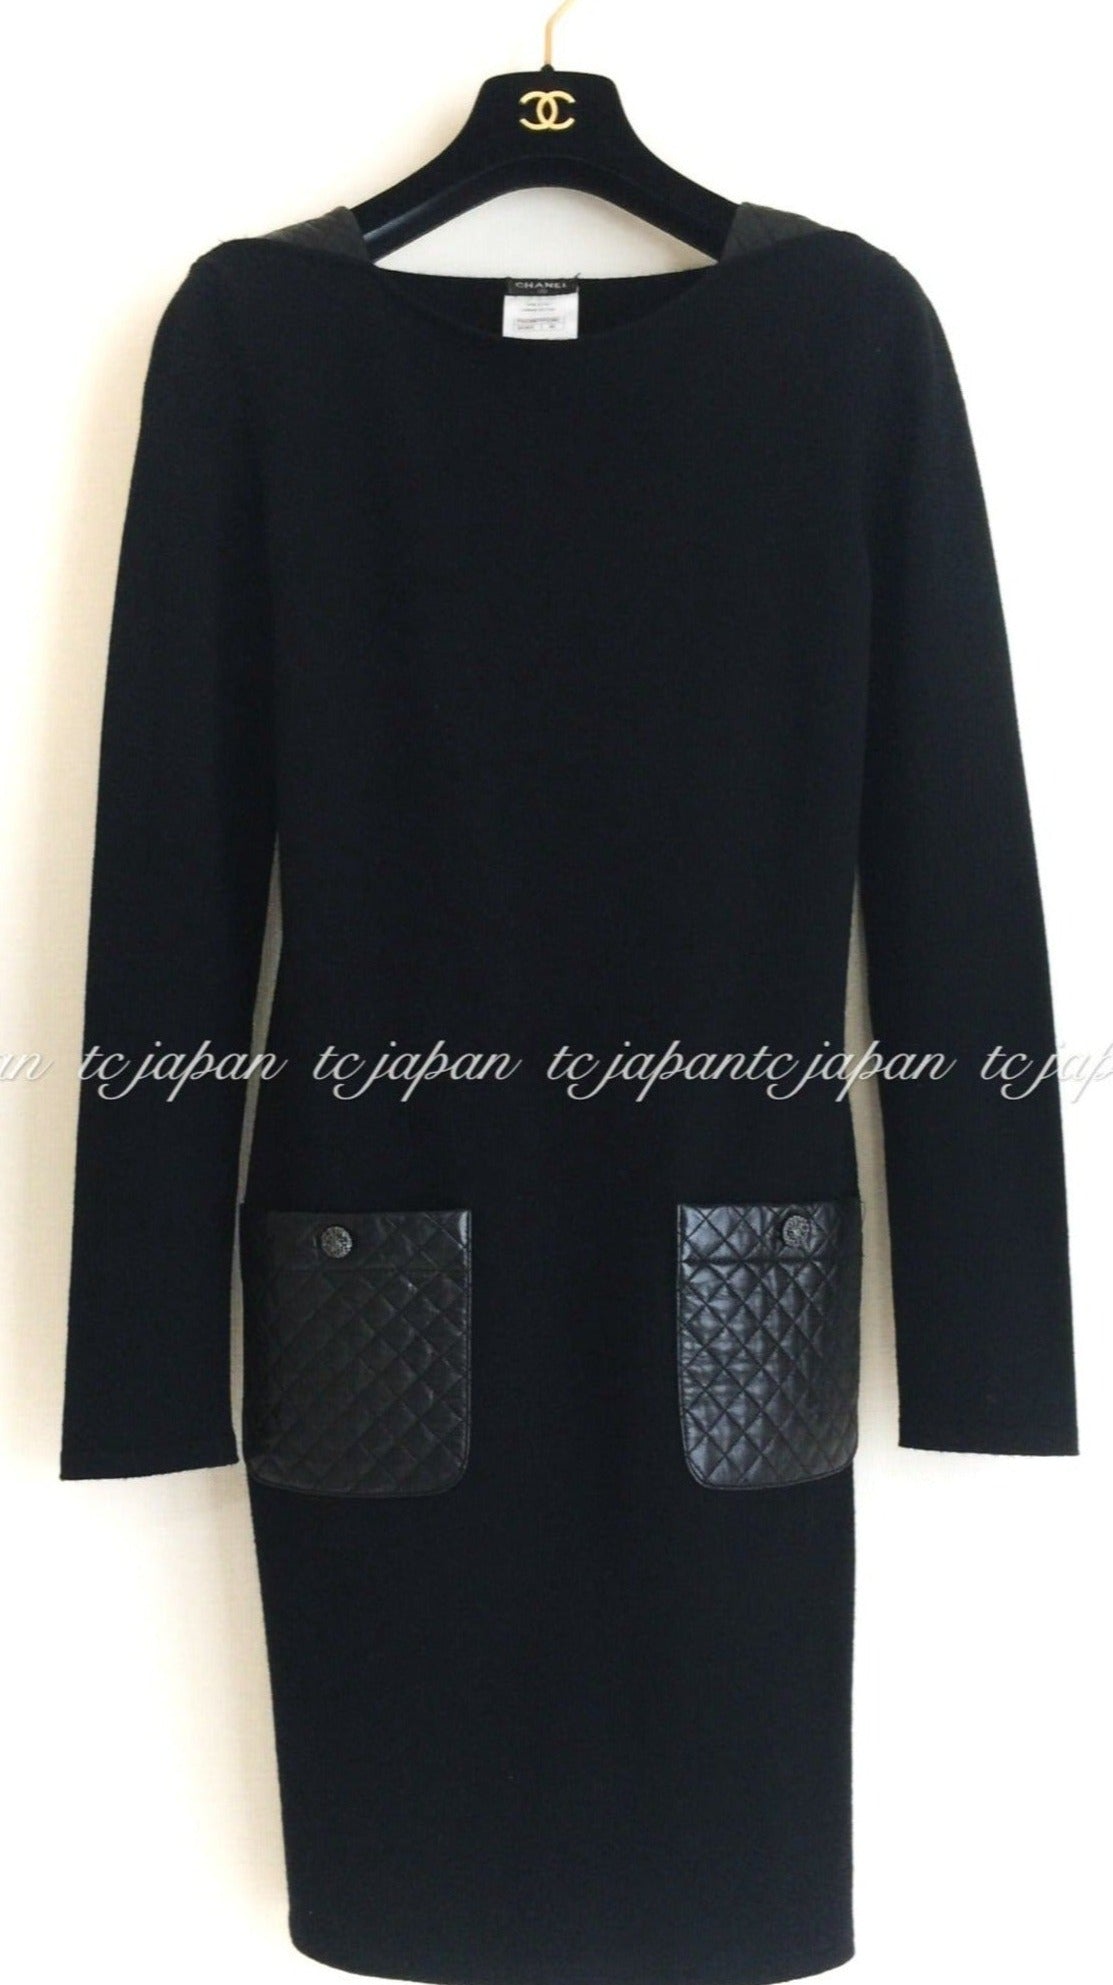 CHANEL 12A Black Wool Cashmere Lambskin Pocket Dress 34 36 シャネル ブラック・ウール・カシミア・ラムスキン レザー マトラッセ・ポケット・ワンピース 即発